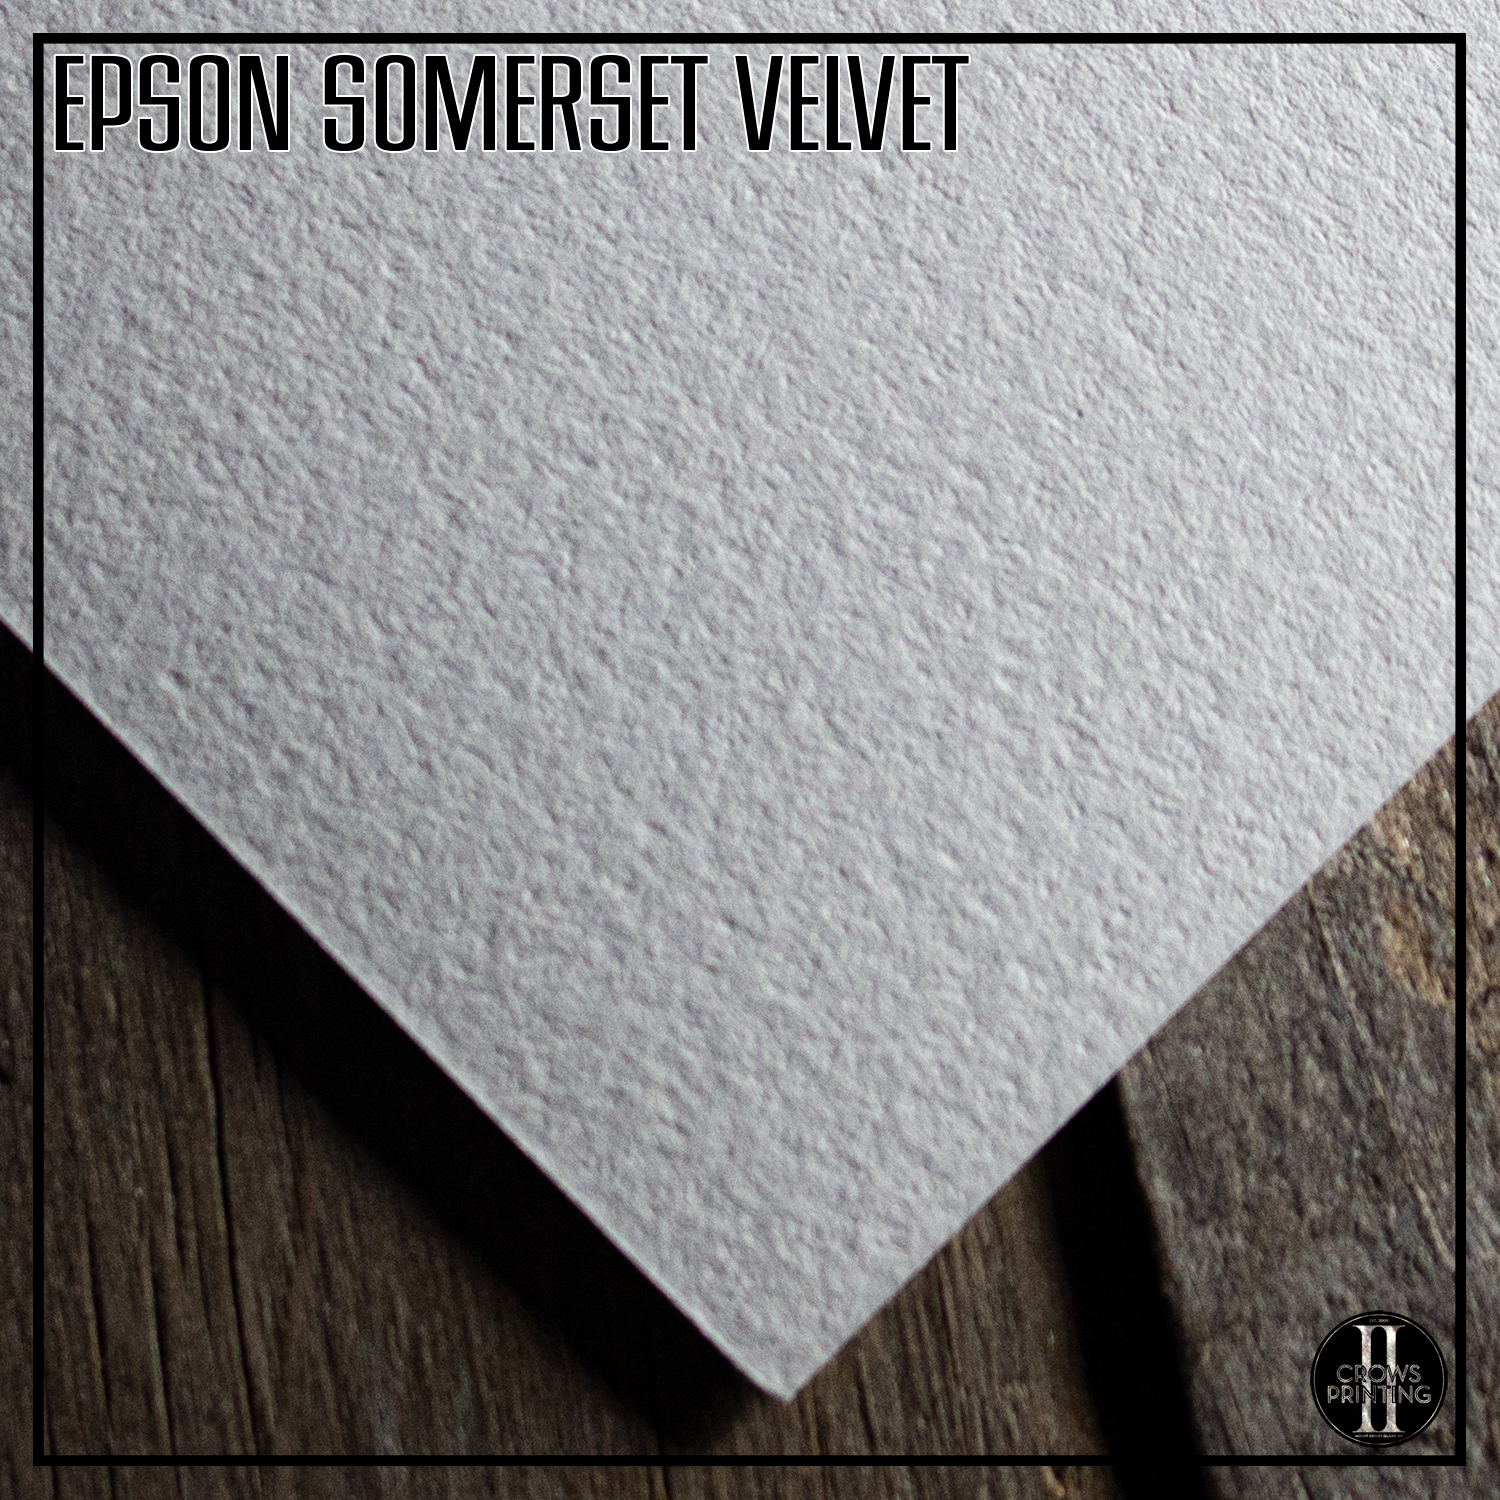 100% Cotton Rag 44" x 50" Sized Roll Epson SP91204 Somerset Velvet Paper 